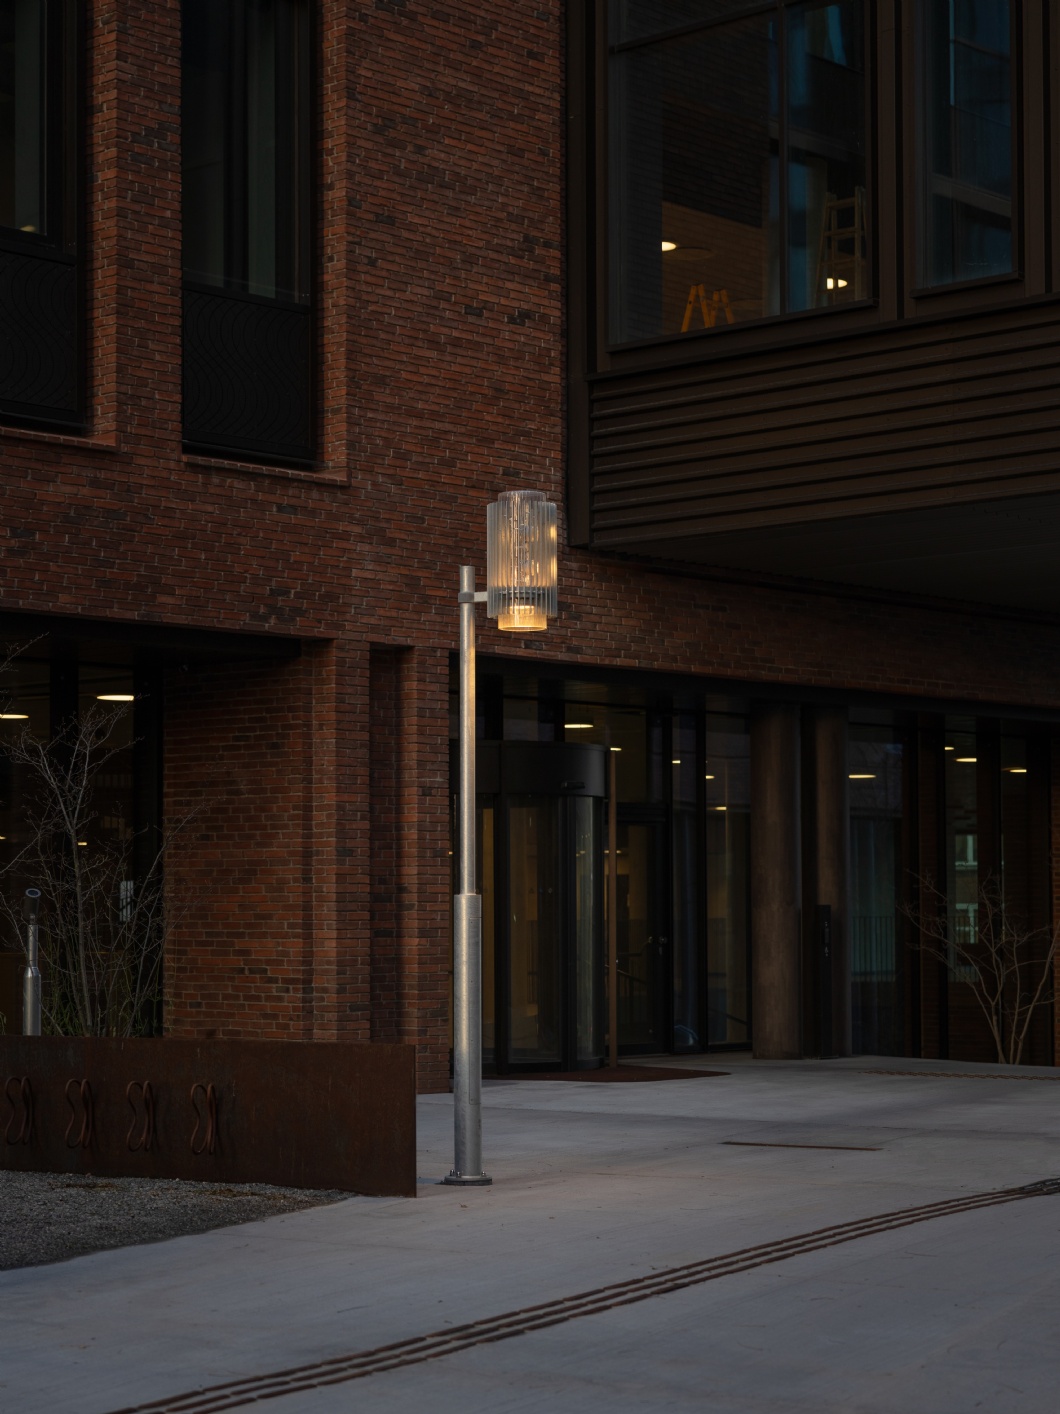 Individuelle Beleuchtung für das lebendige Stadtviertel – Postbyen in Kopenhagen 3